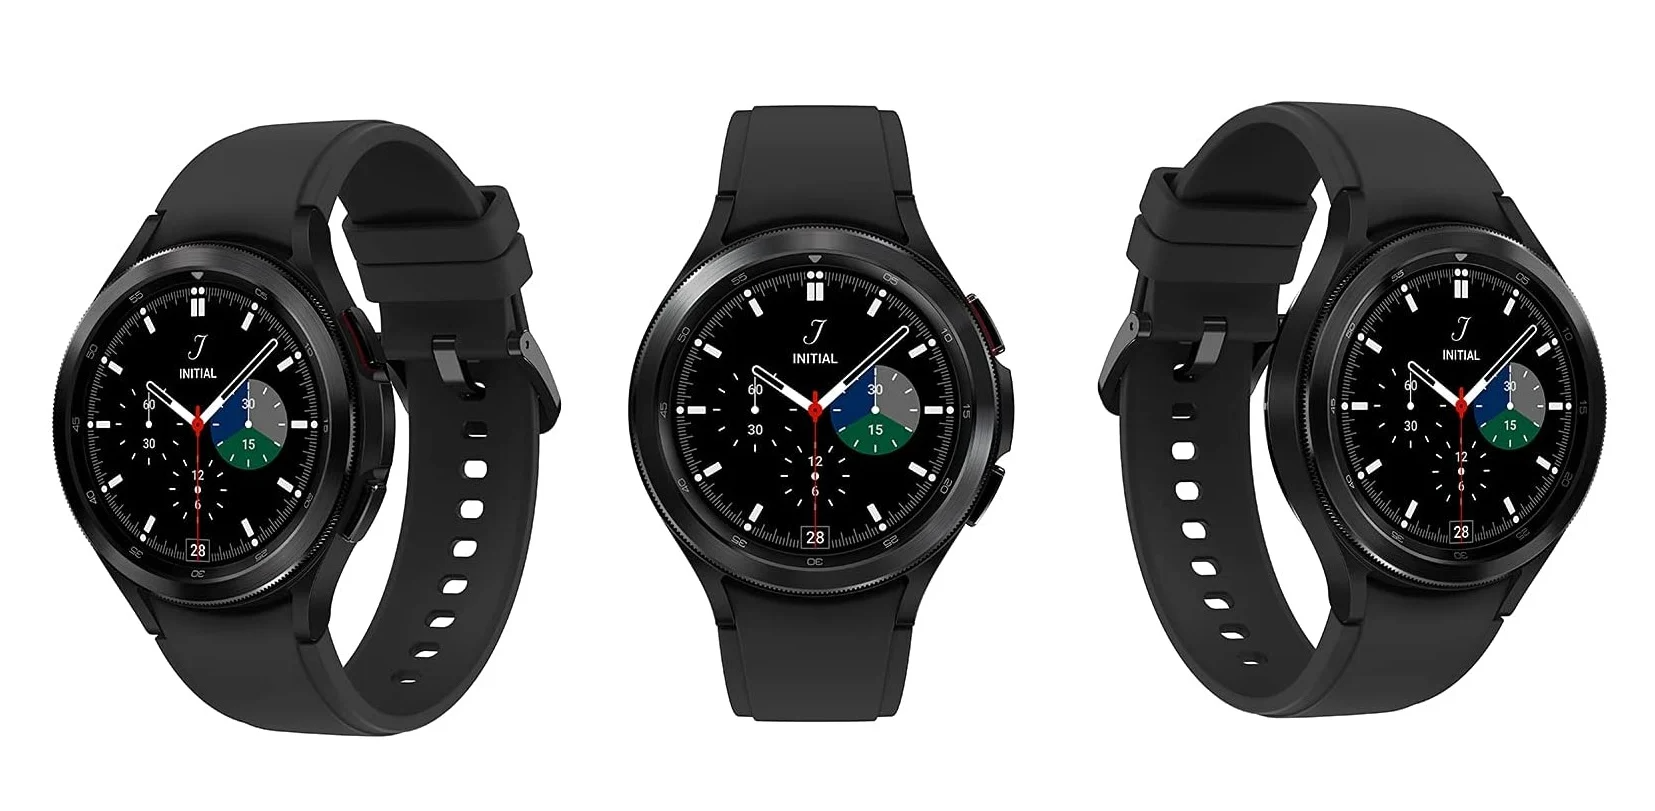 Szczegółowe specyfikacje i ceny smartwatchy Samsung Galaxy Watch 4 i Galaxy Watch 4 Classic trafiły do sieci jeszcze przed zapowiedzią